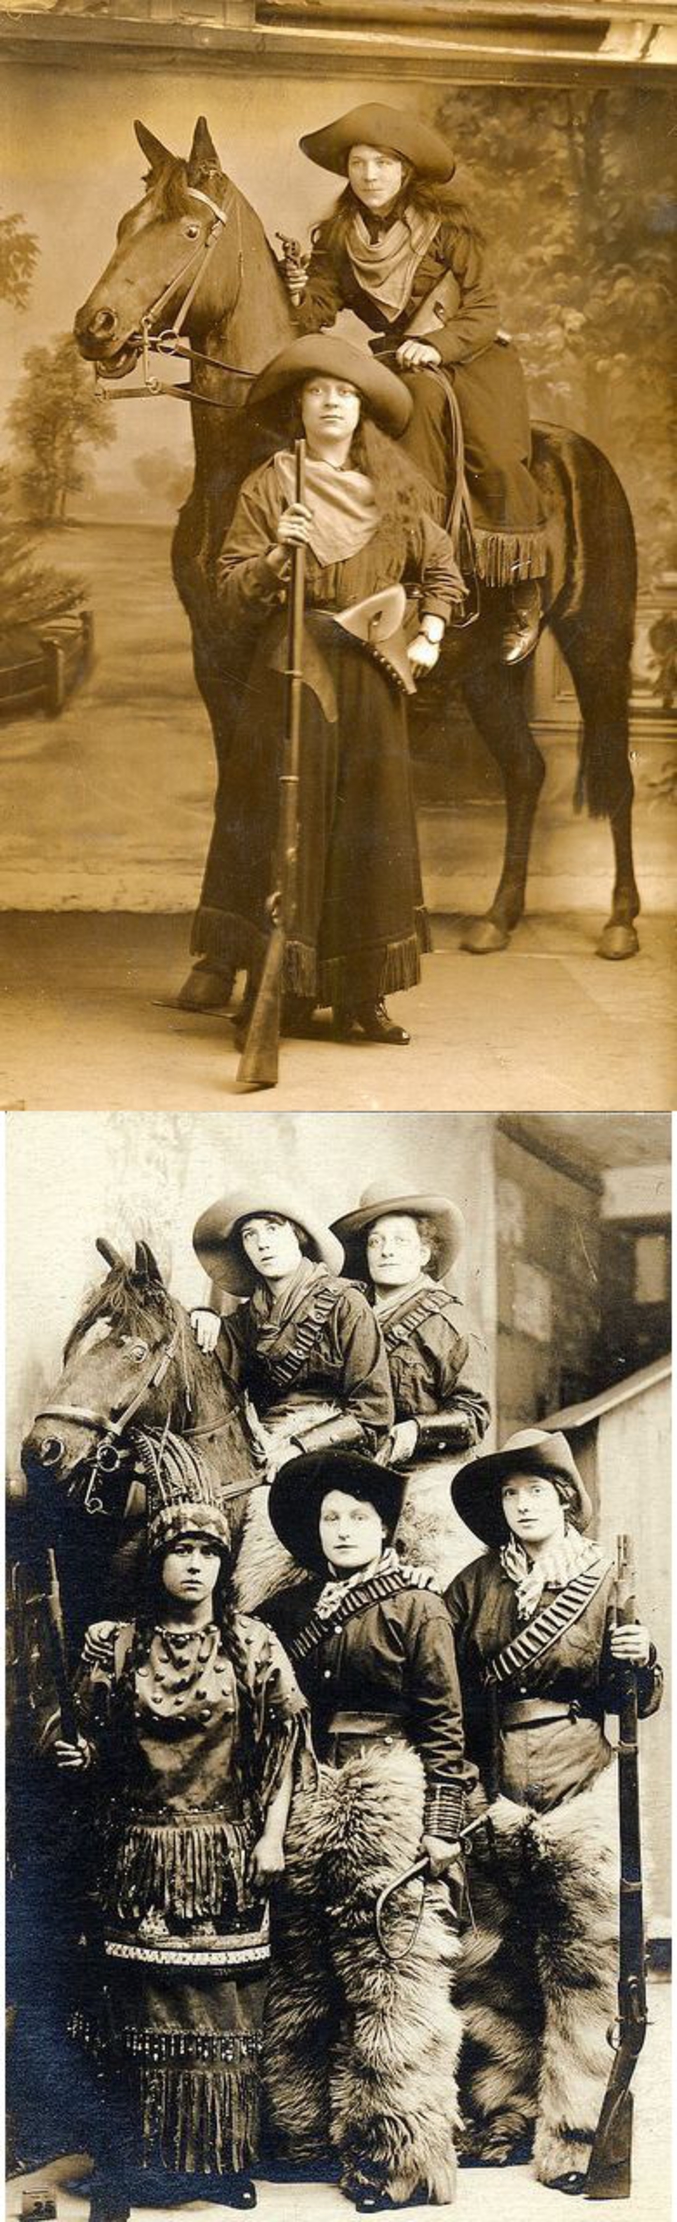 Ne vous méprenez pas, il s'agit seulement d'un photographe new-yorkais qui, aux alentours de 1900, trouva "accrocheur" de faire poser des jeunes filles dans ces accoutrements.